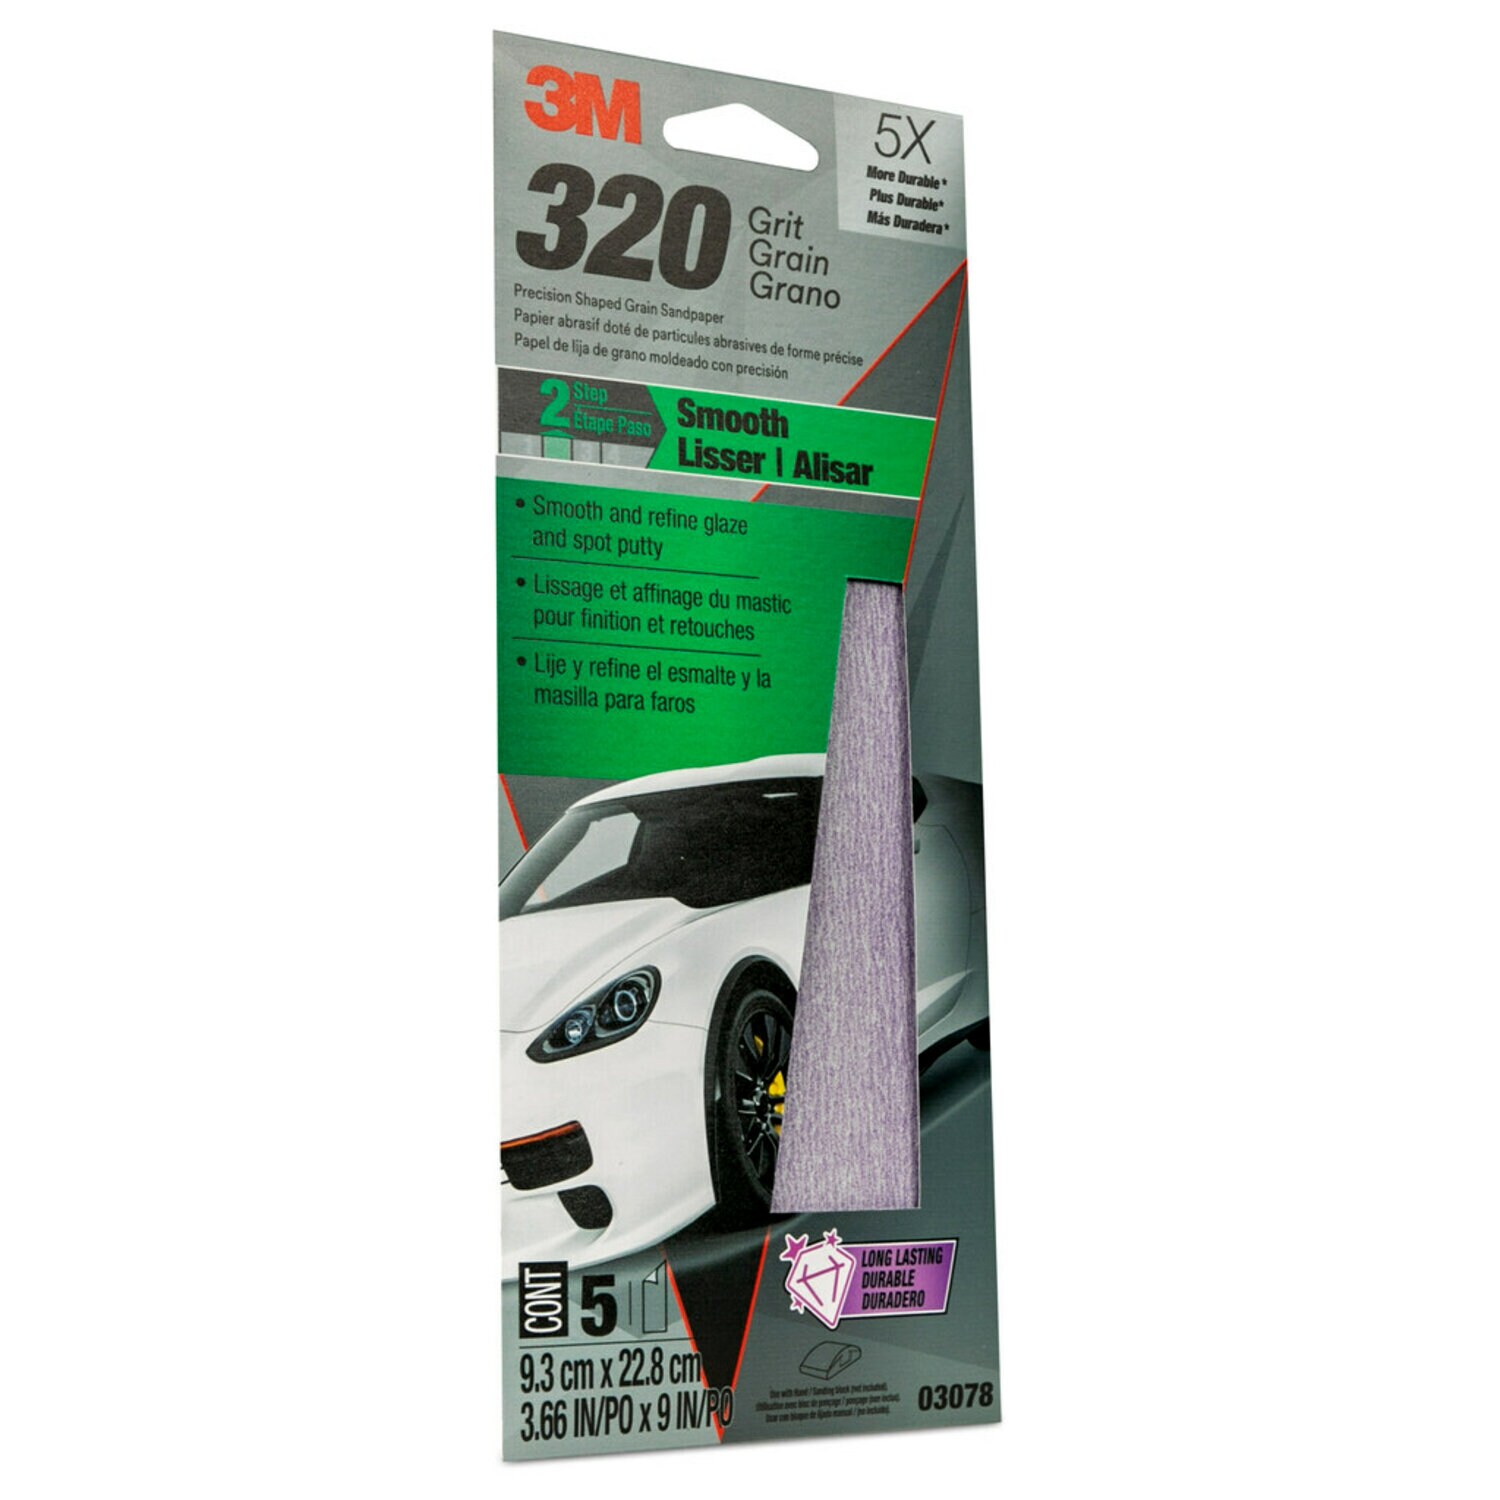 7100199902 - 3M Premium Automotive Sandpaper, 03078, 3 2/3 in x 9 in, 320 Grit, 5
sheets per pack, 20 packs per case